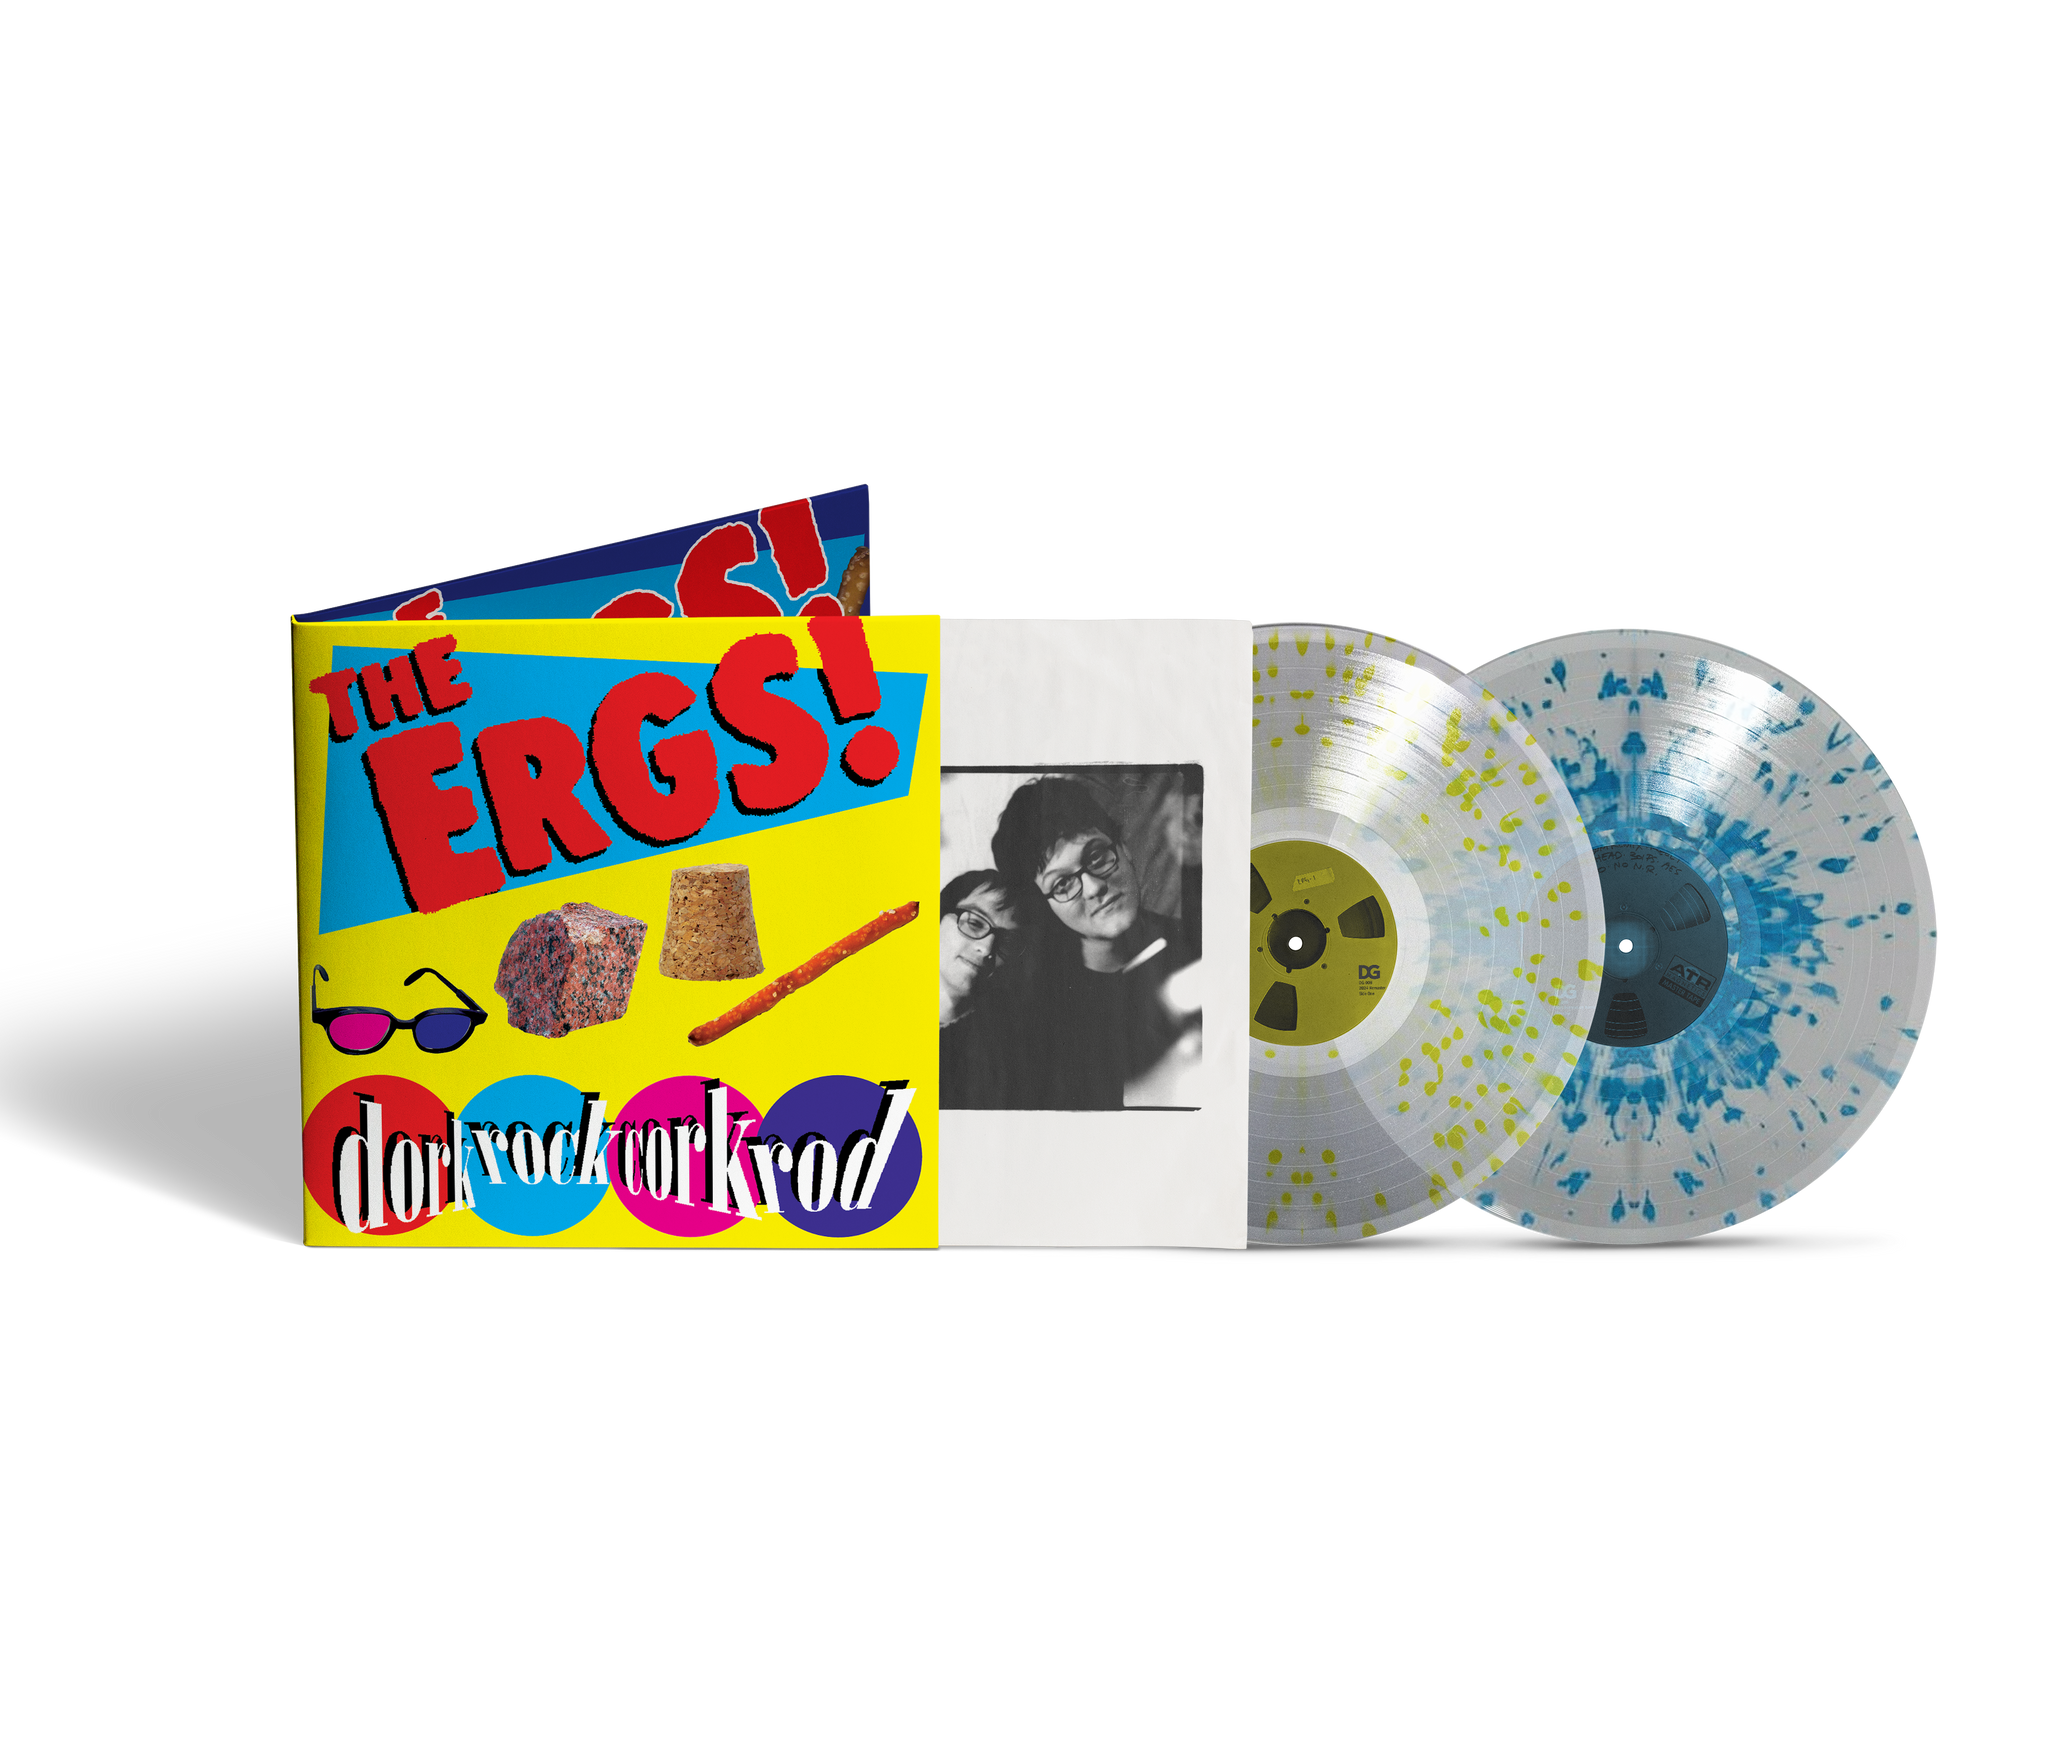 The Ergs! "dorkrockcorkrod (20th Anniversary Deluxe Edition)" 2x12"